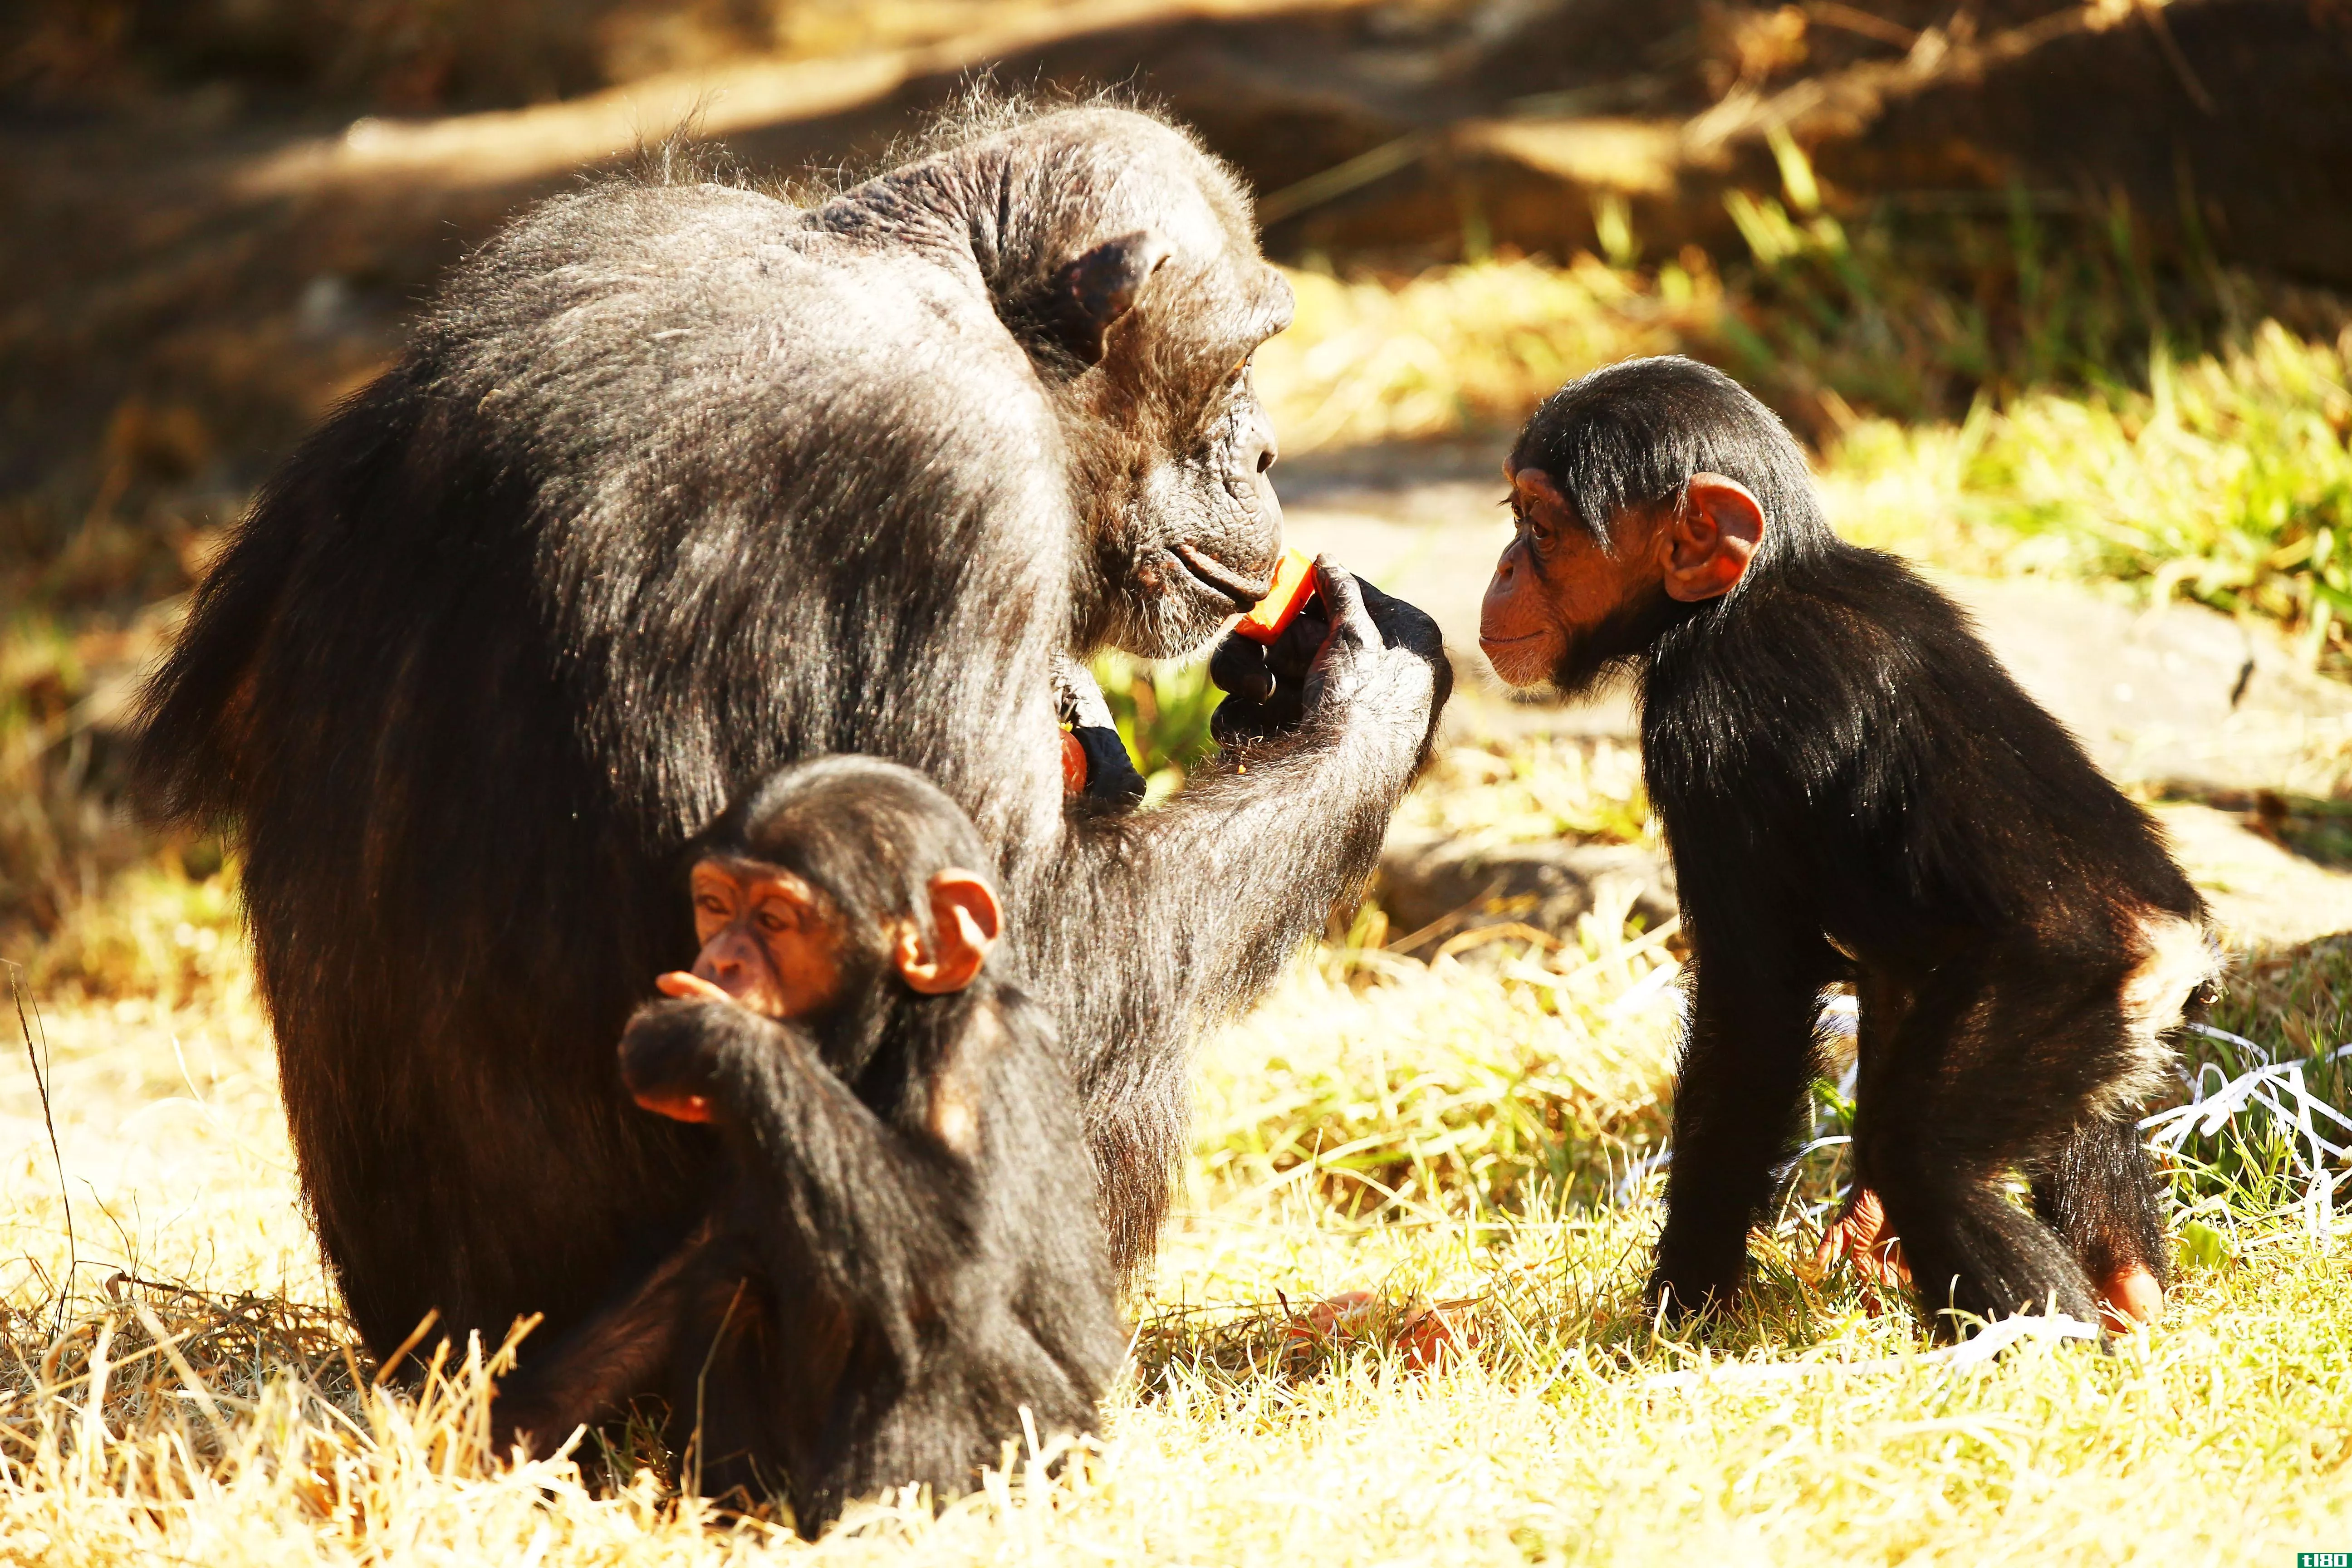 黑猩猩识别彼此的屁股就像我们识别面孔一样